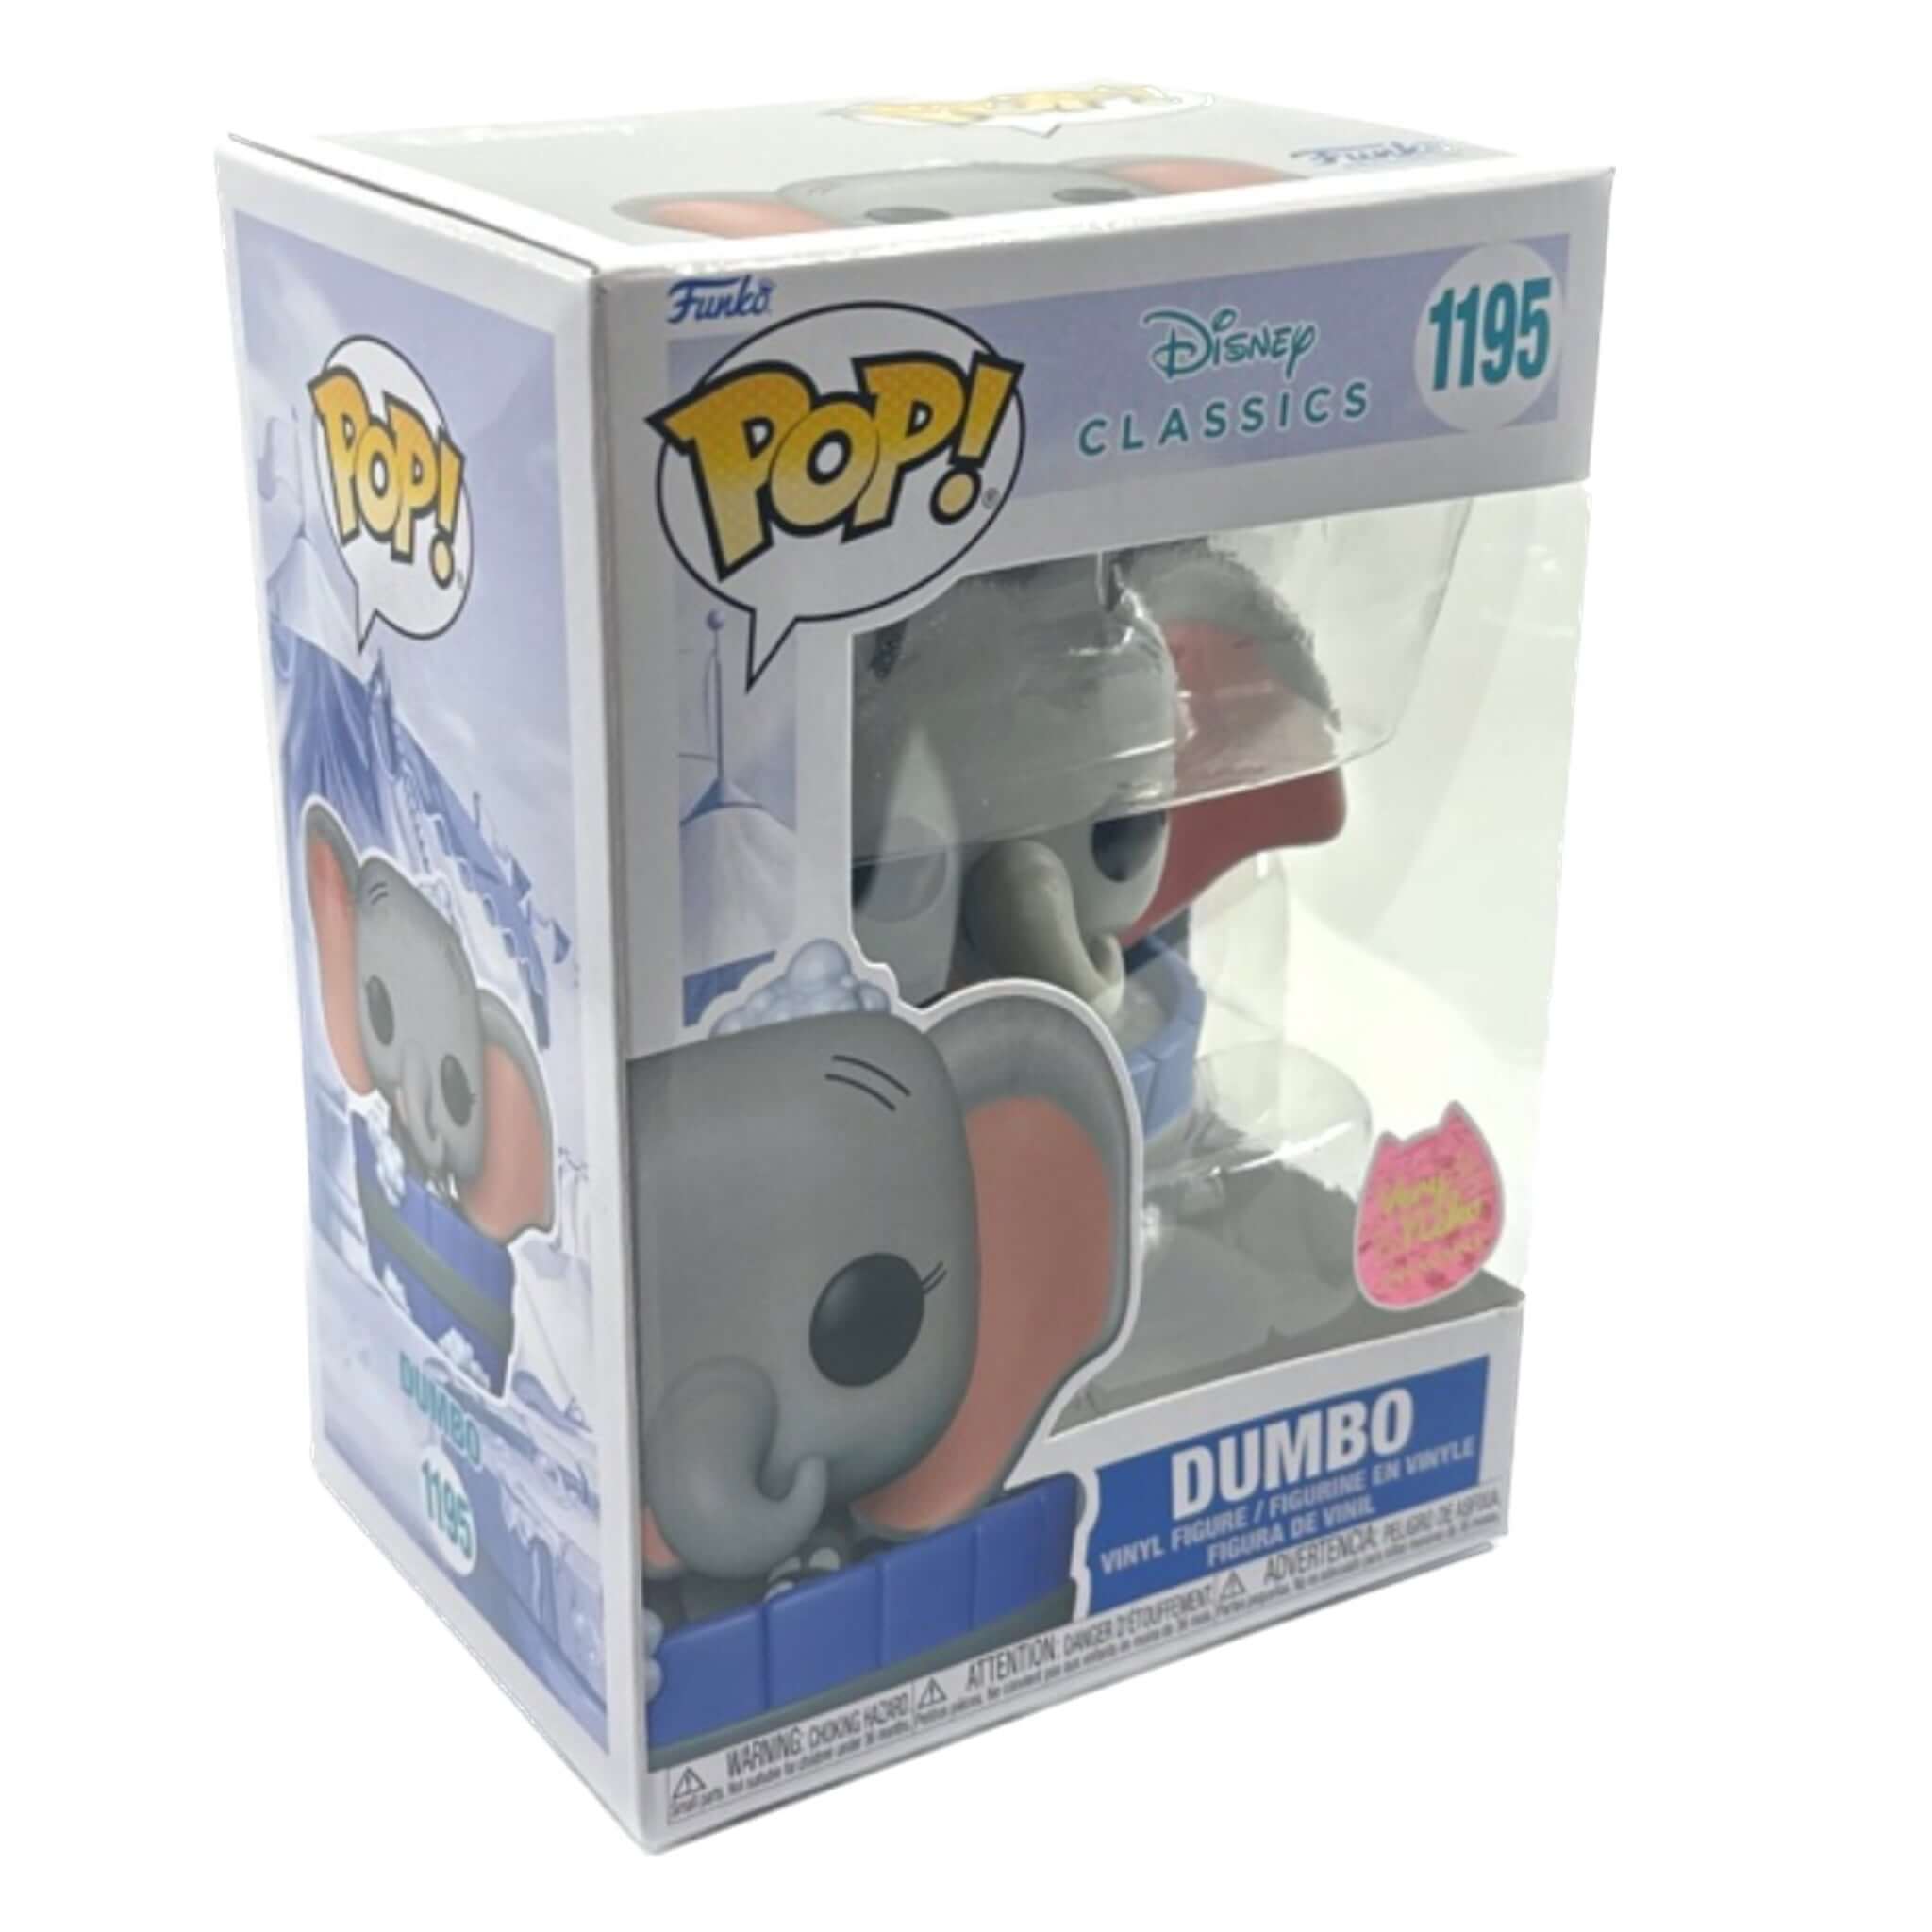 Dumbo Funko Pop! VERY NEKO EXCLUSIVE